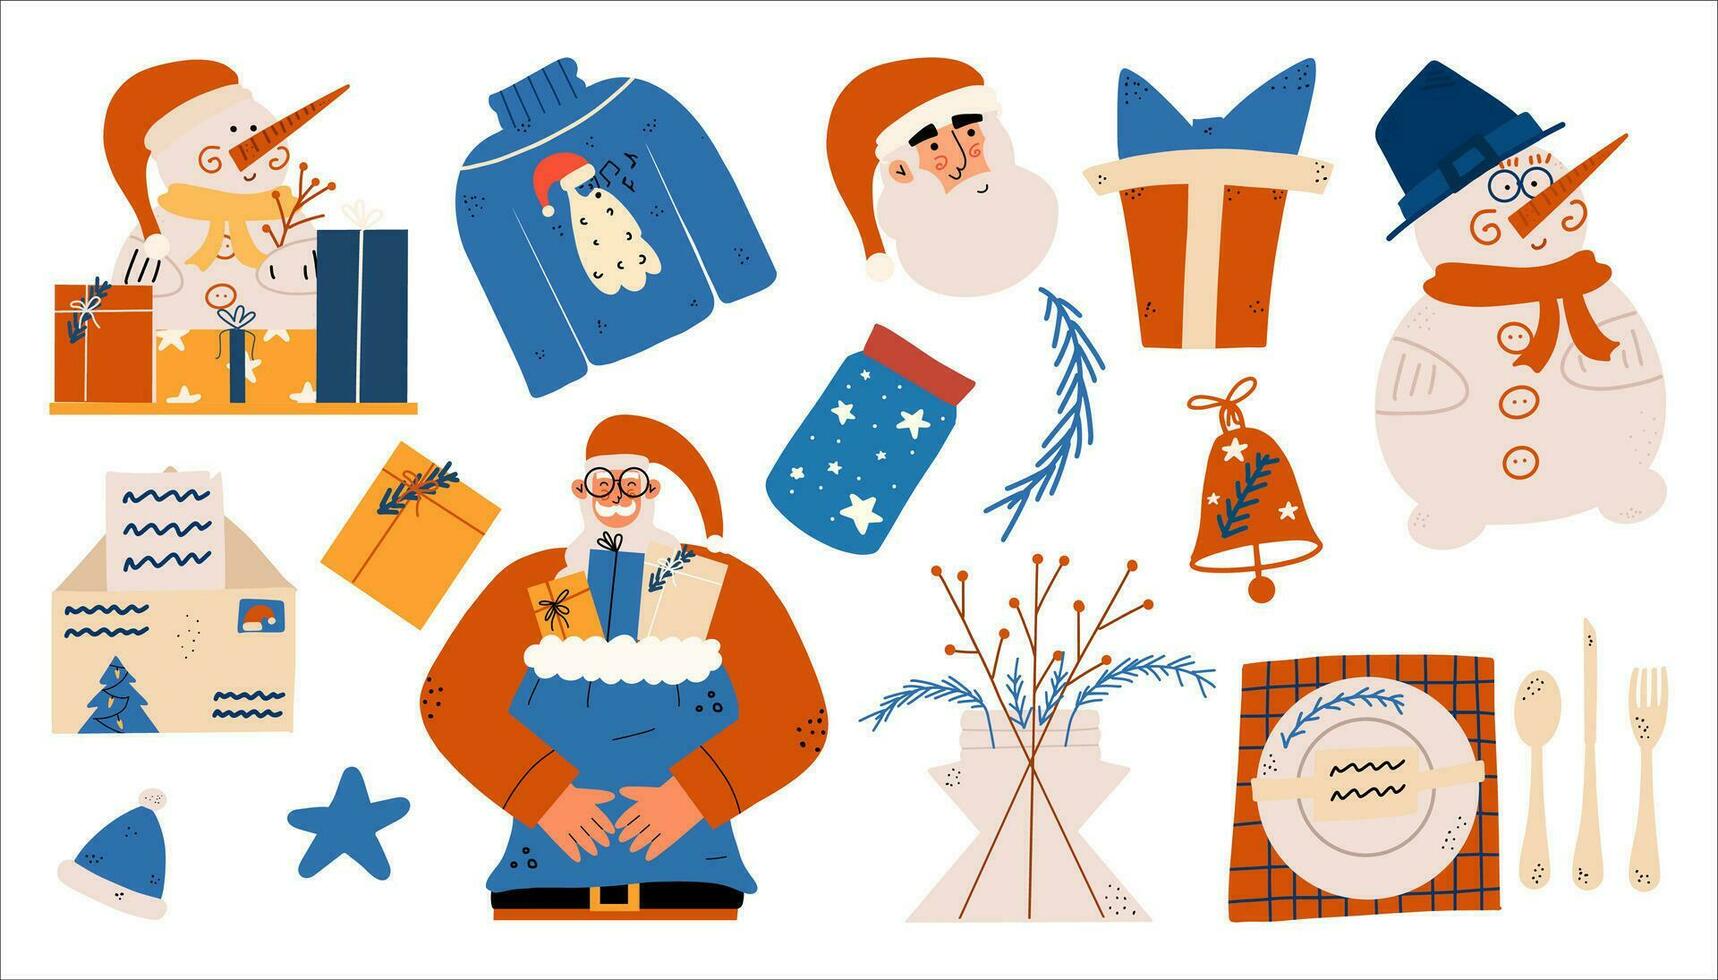 groot nieuw jaar reeks van elementen in hand getekend stijl. de kerstman claus, sneeuwman, tafel instelling, envelop, geschenk, klok. vector illustratie